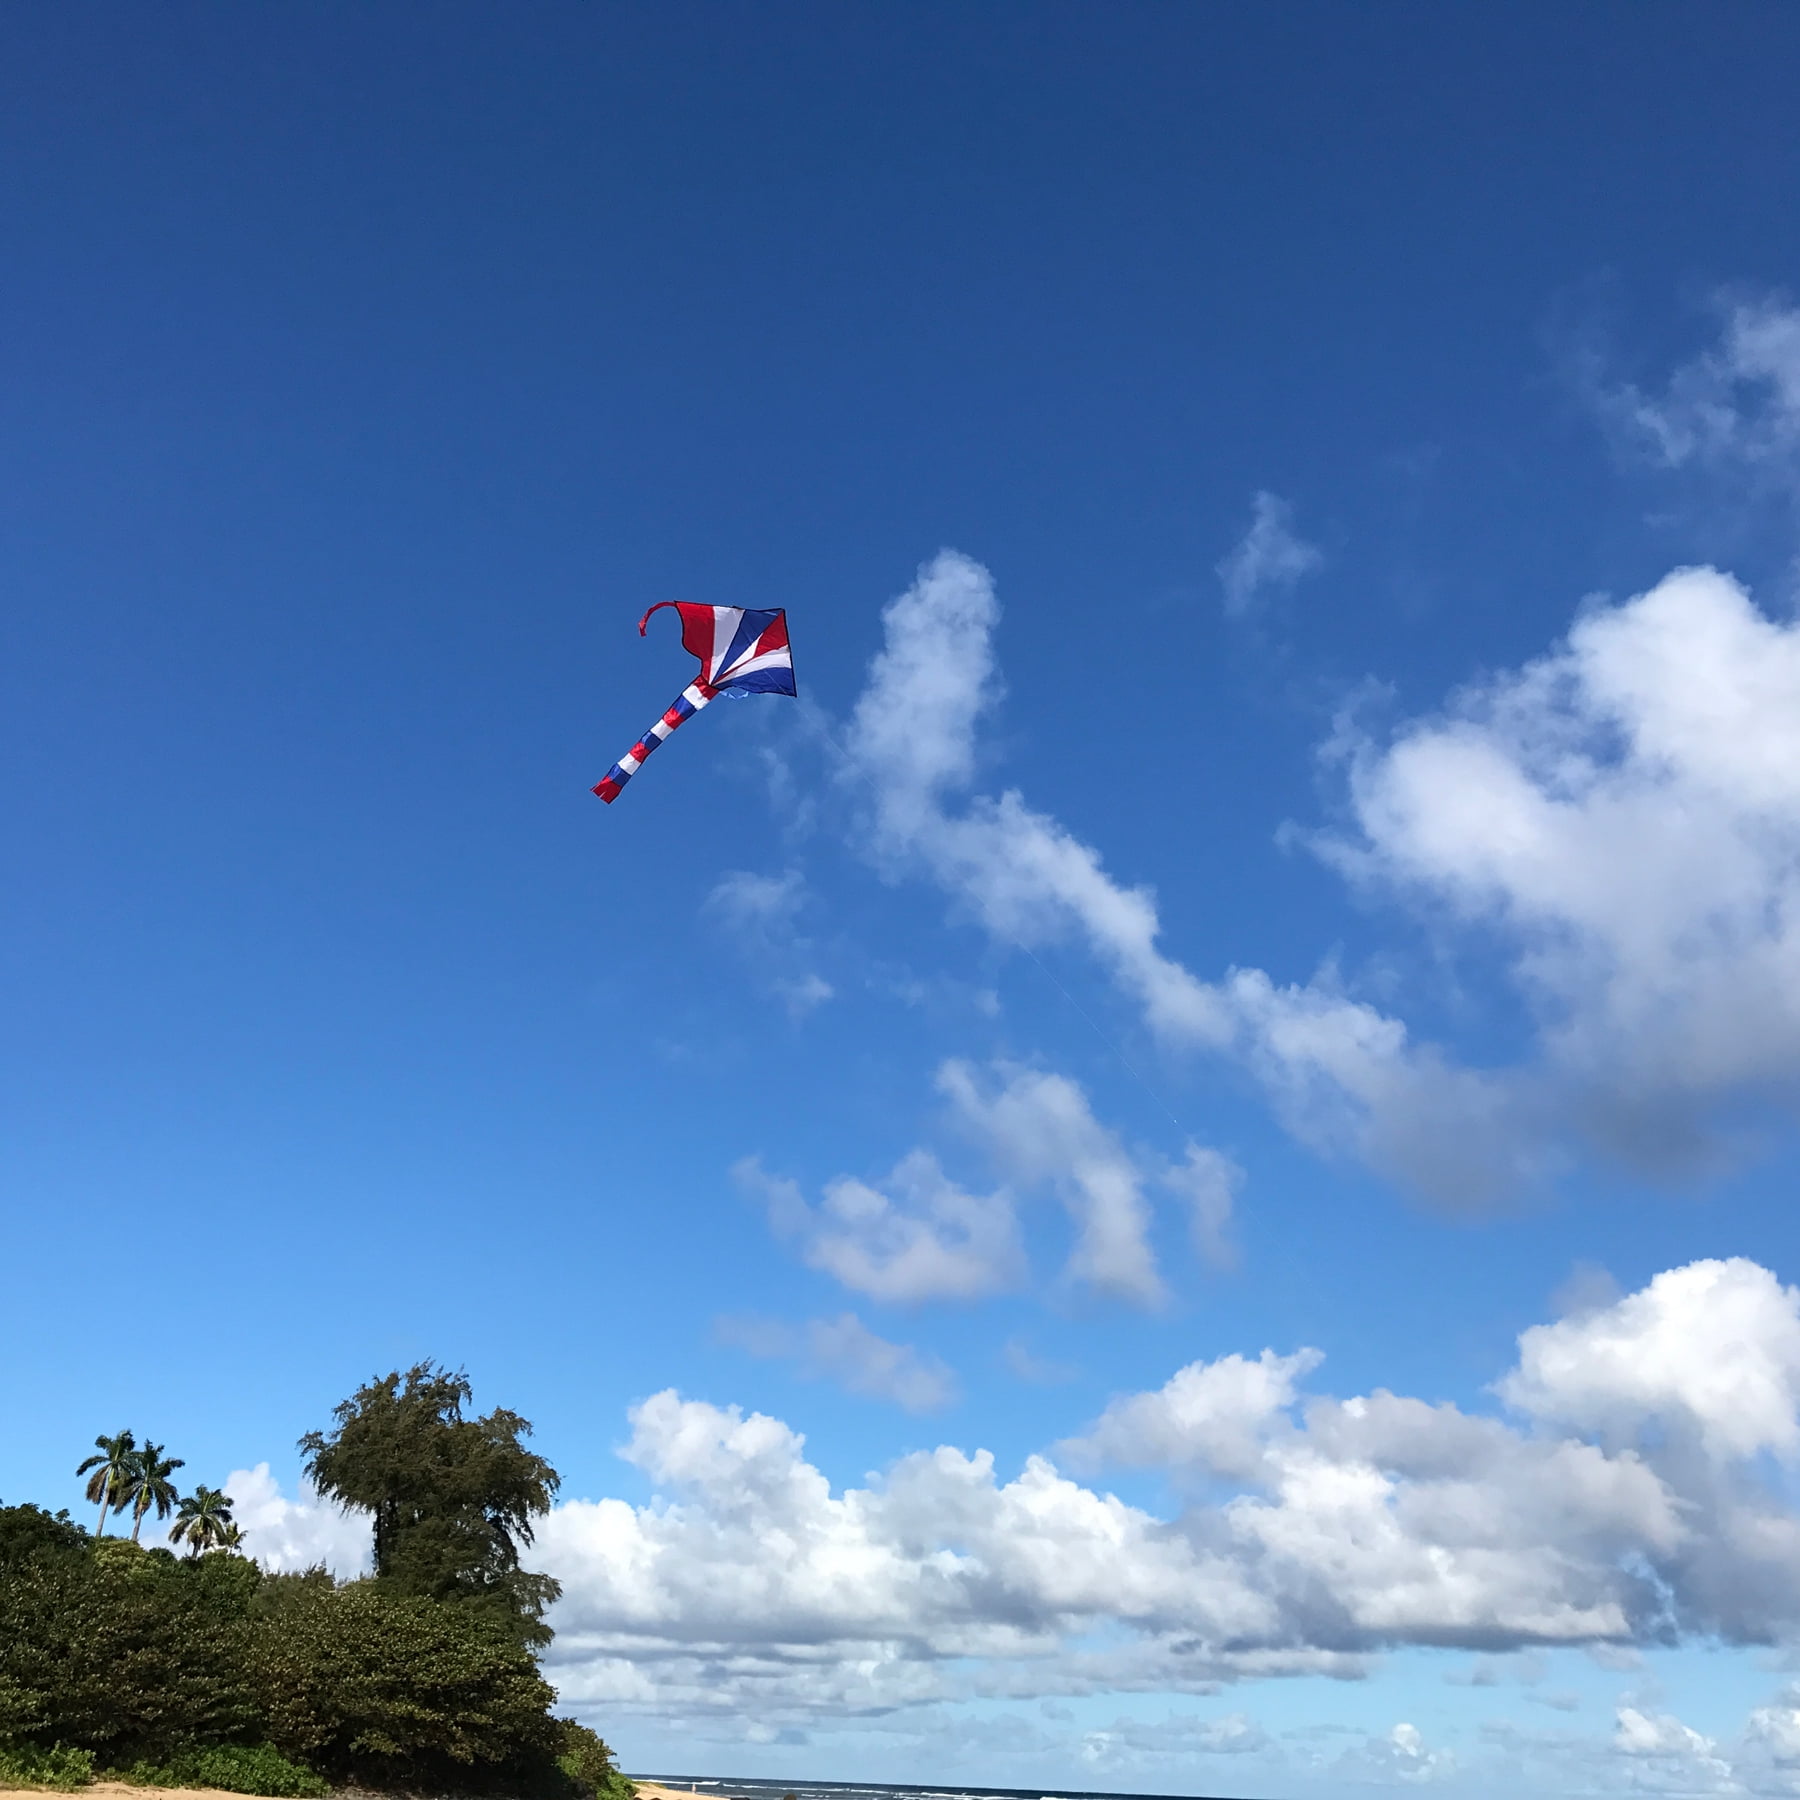 amousa Kite Launch-er Toys With Kite Toy Set, 2023 New Kids Kite